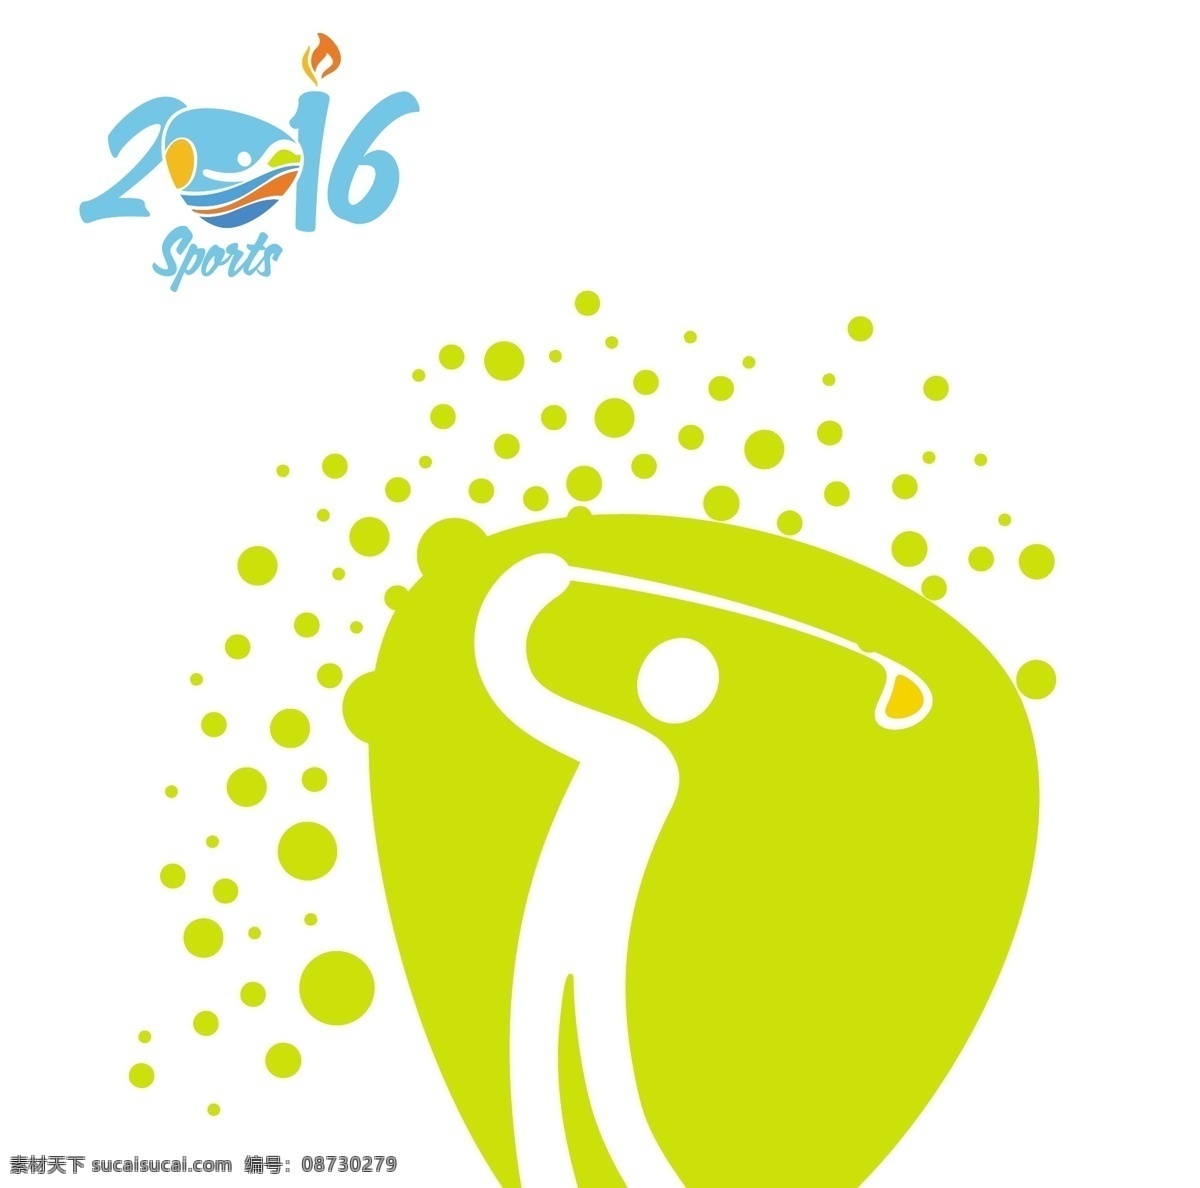 高尔夫 奥运会 图标 人 抽象 偶像 体育 健身 健康 图形 剪影 事件 创意 2016 形态 现代 运动 训练